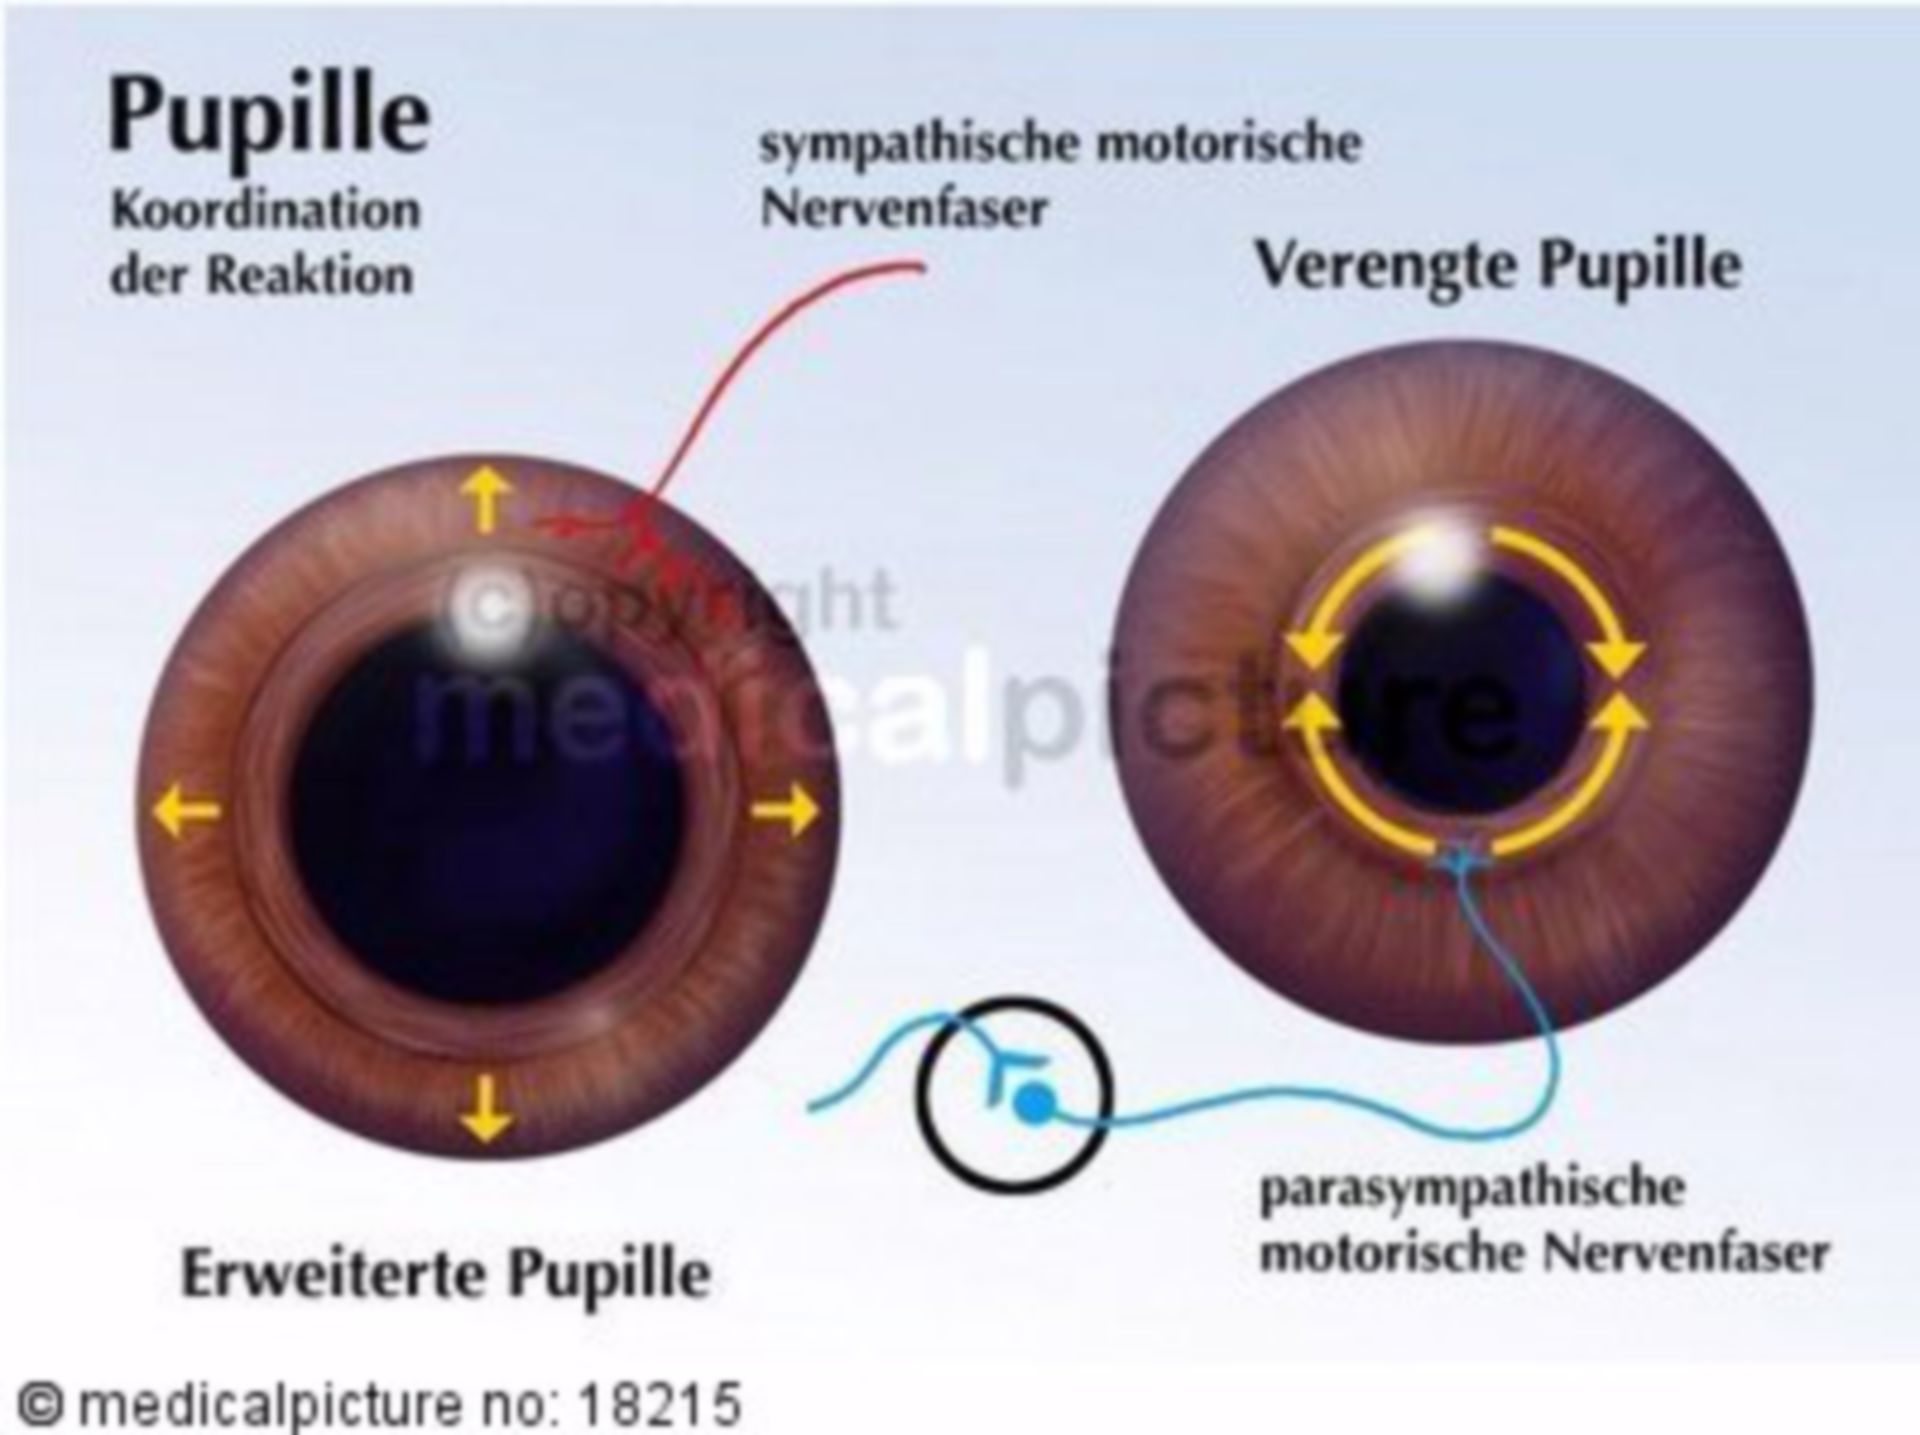 Pupil, pupil dilation, pupil constriction